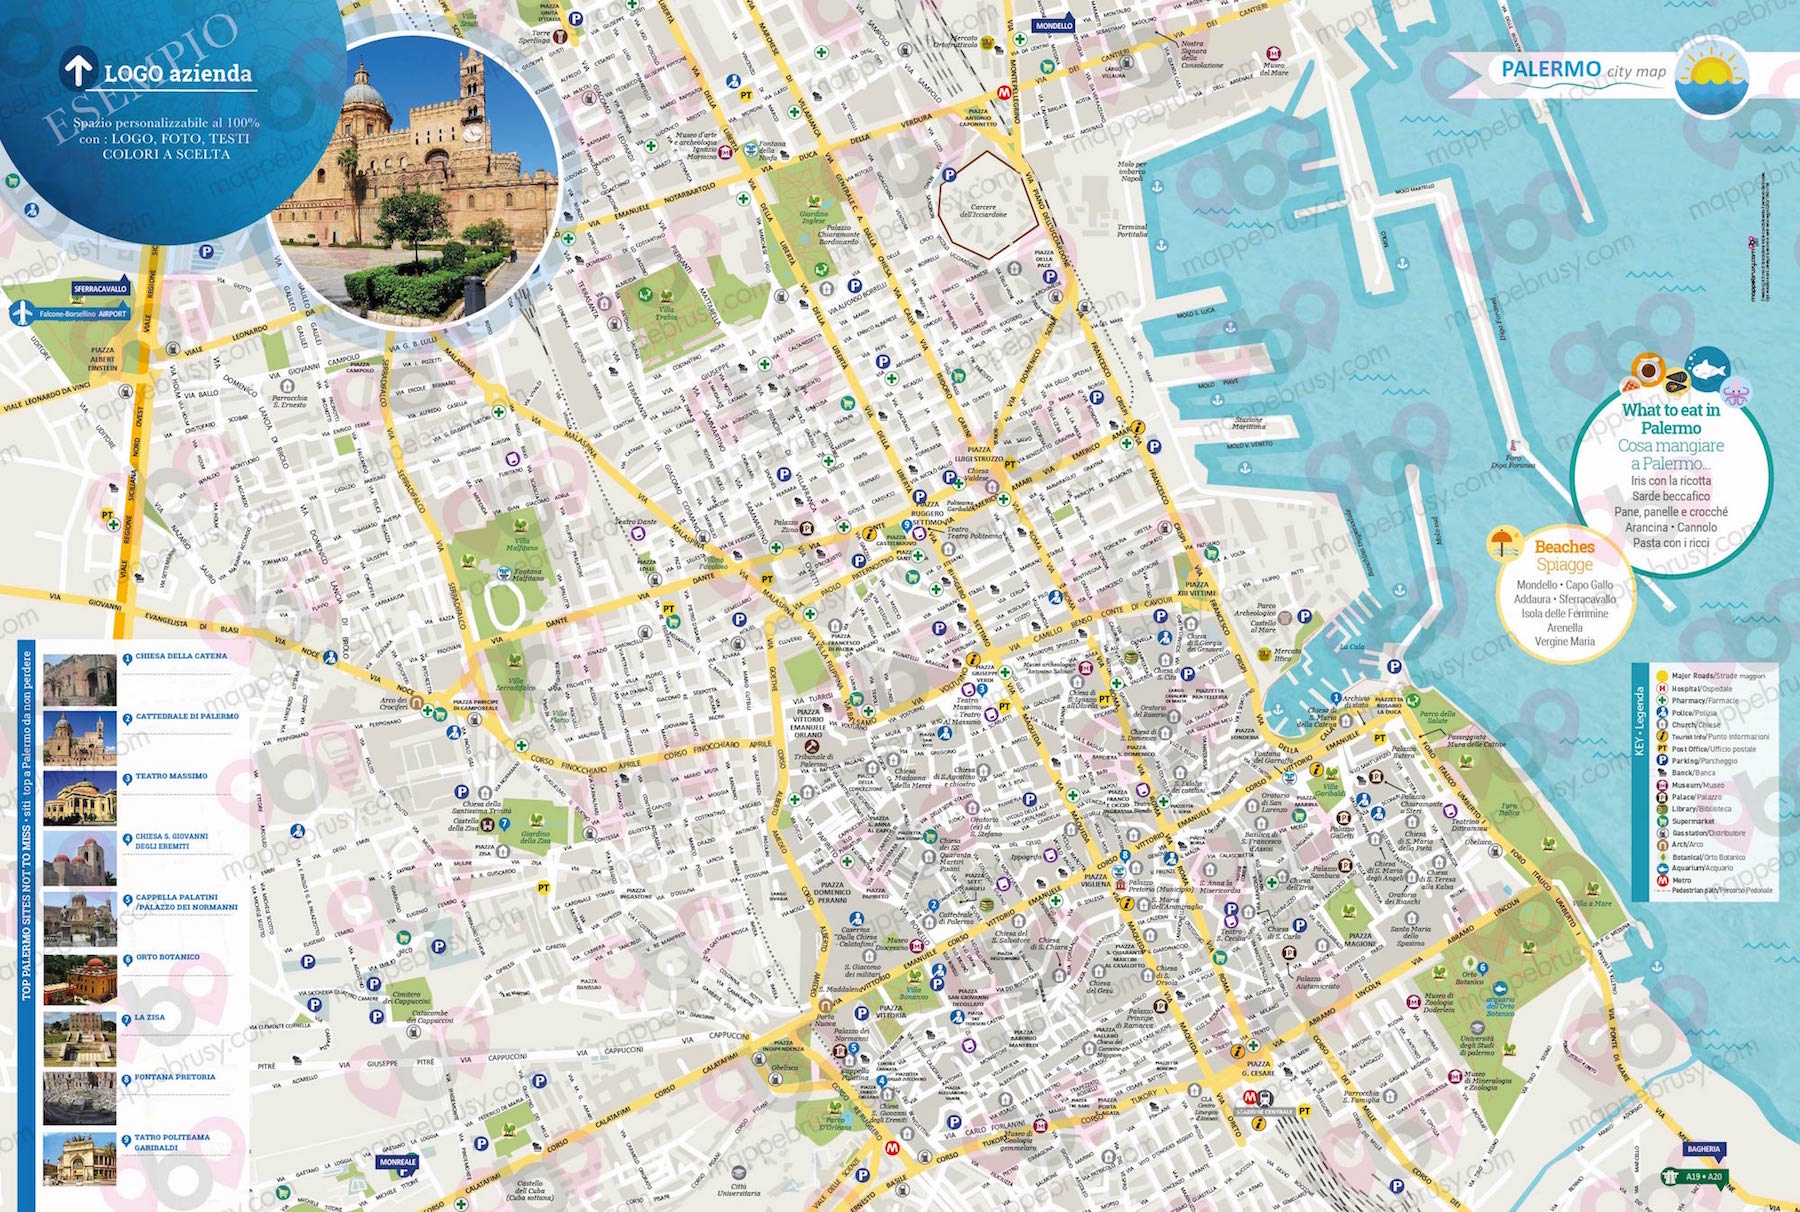 Mappa di Palermo - Palermo city map - mappa Palermo - mappa personalizzata di Palermo - mappa tursitica di Palermo